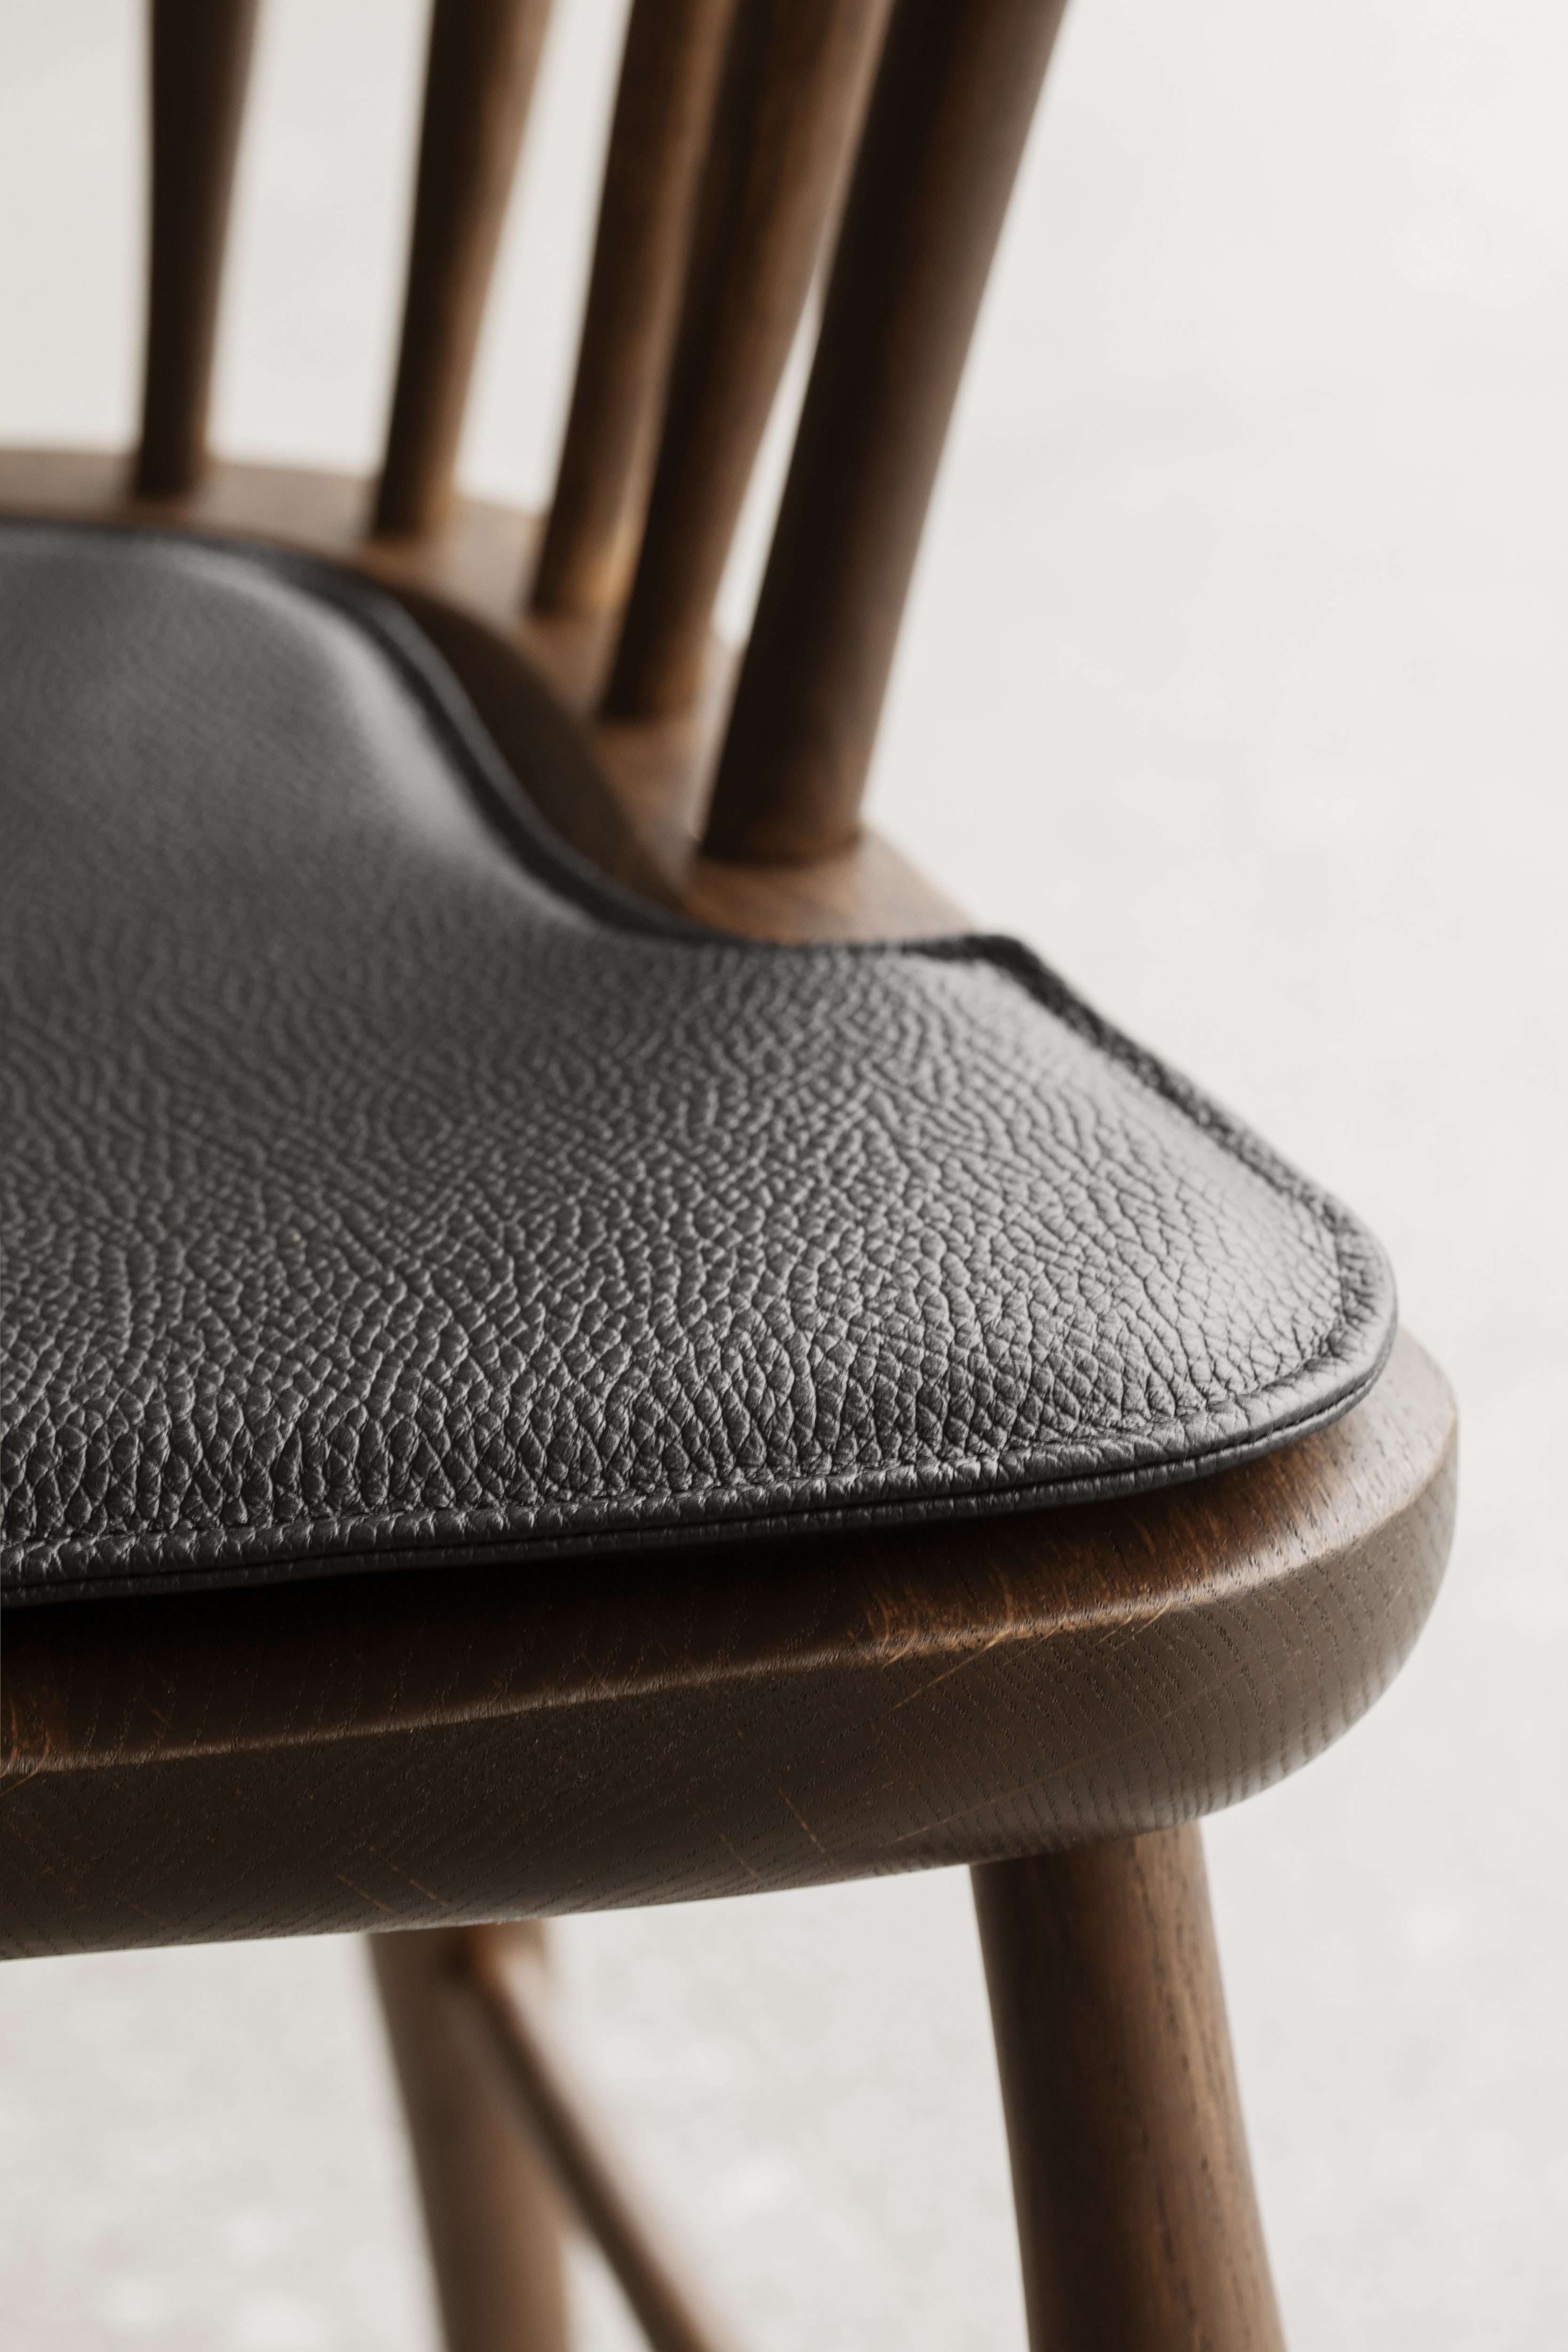 Carl Hansen Cushion For Windsor Chair, Leather Loke 7150